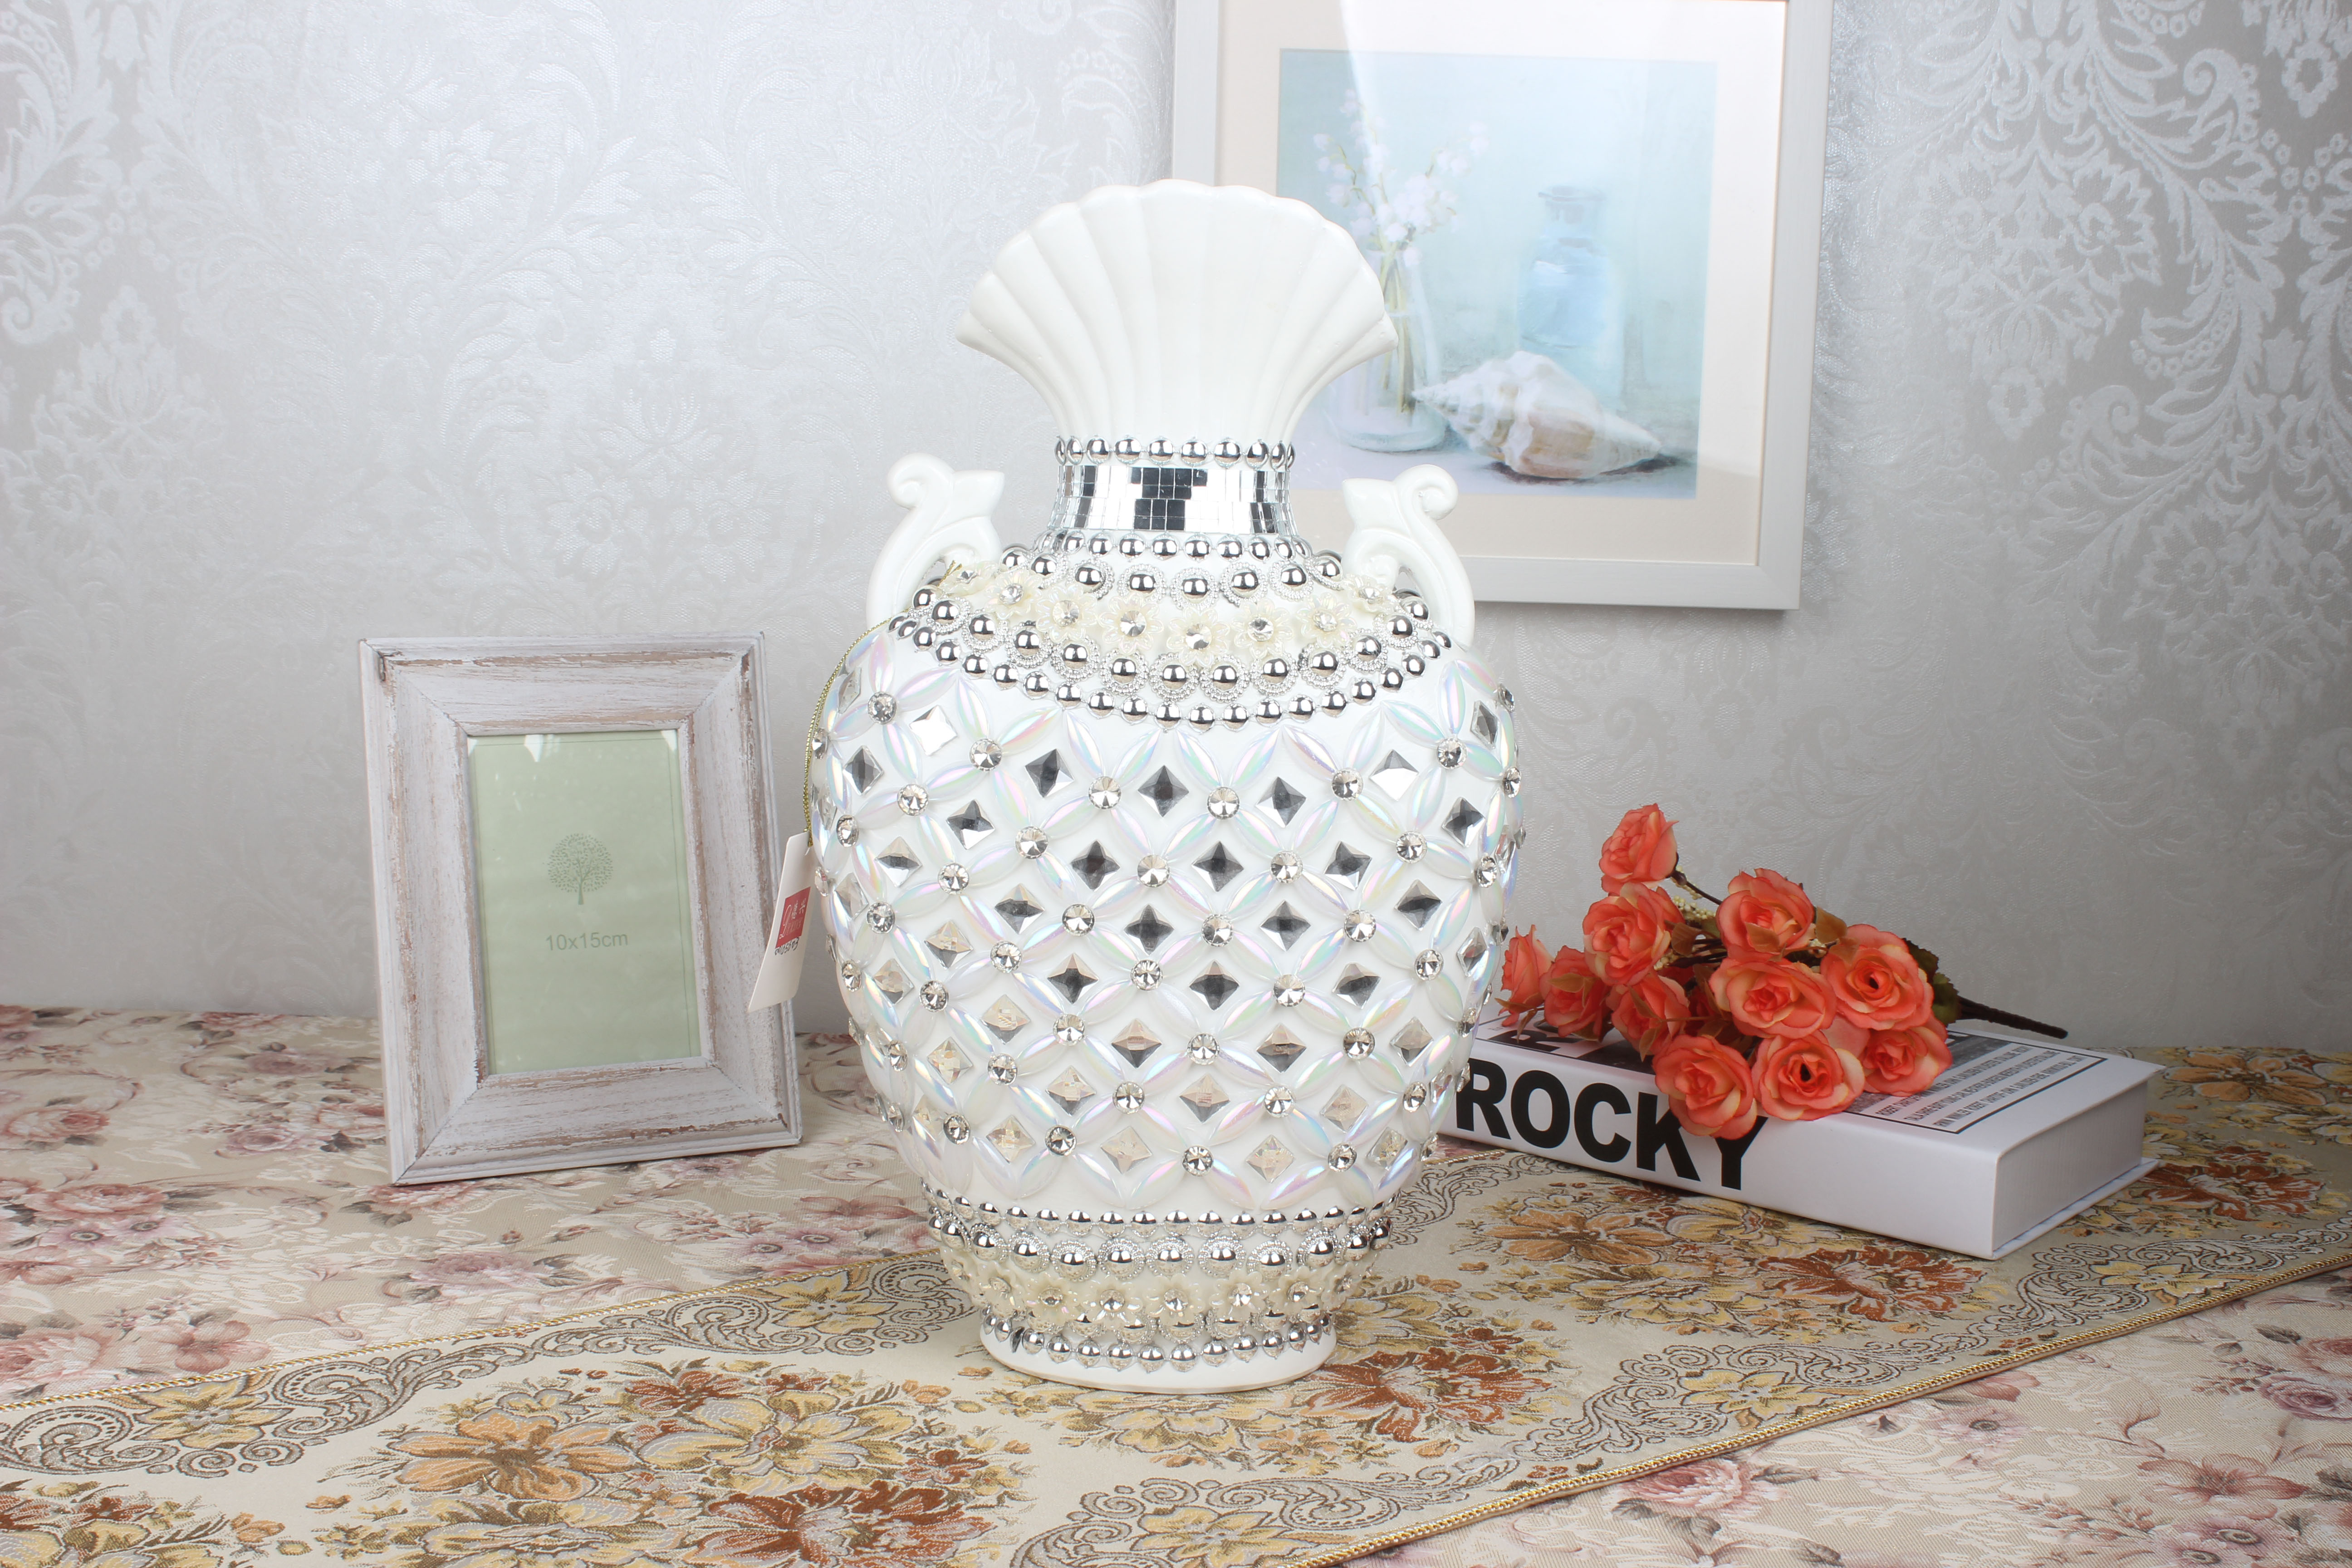 陶瓷花瓶摆件家居装饰 潮州花瓶厂家直销批发定制陶瓷花瓶图片